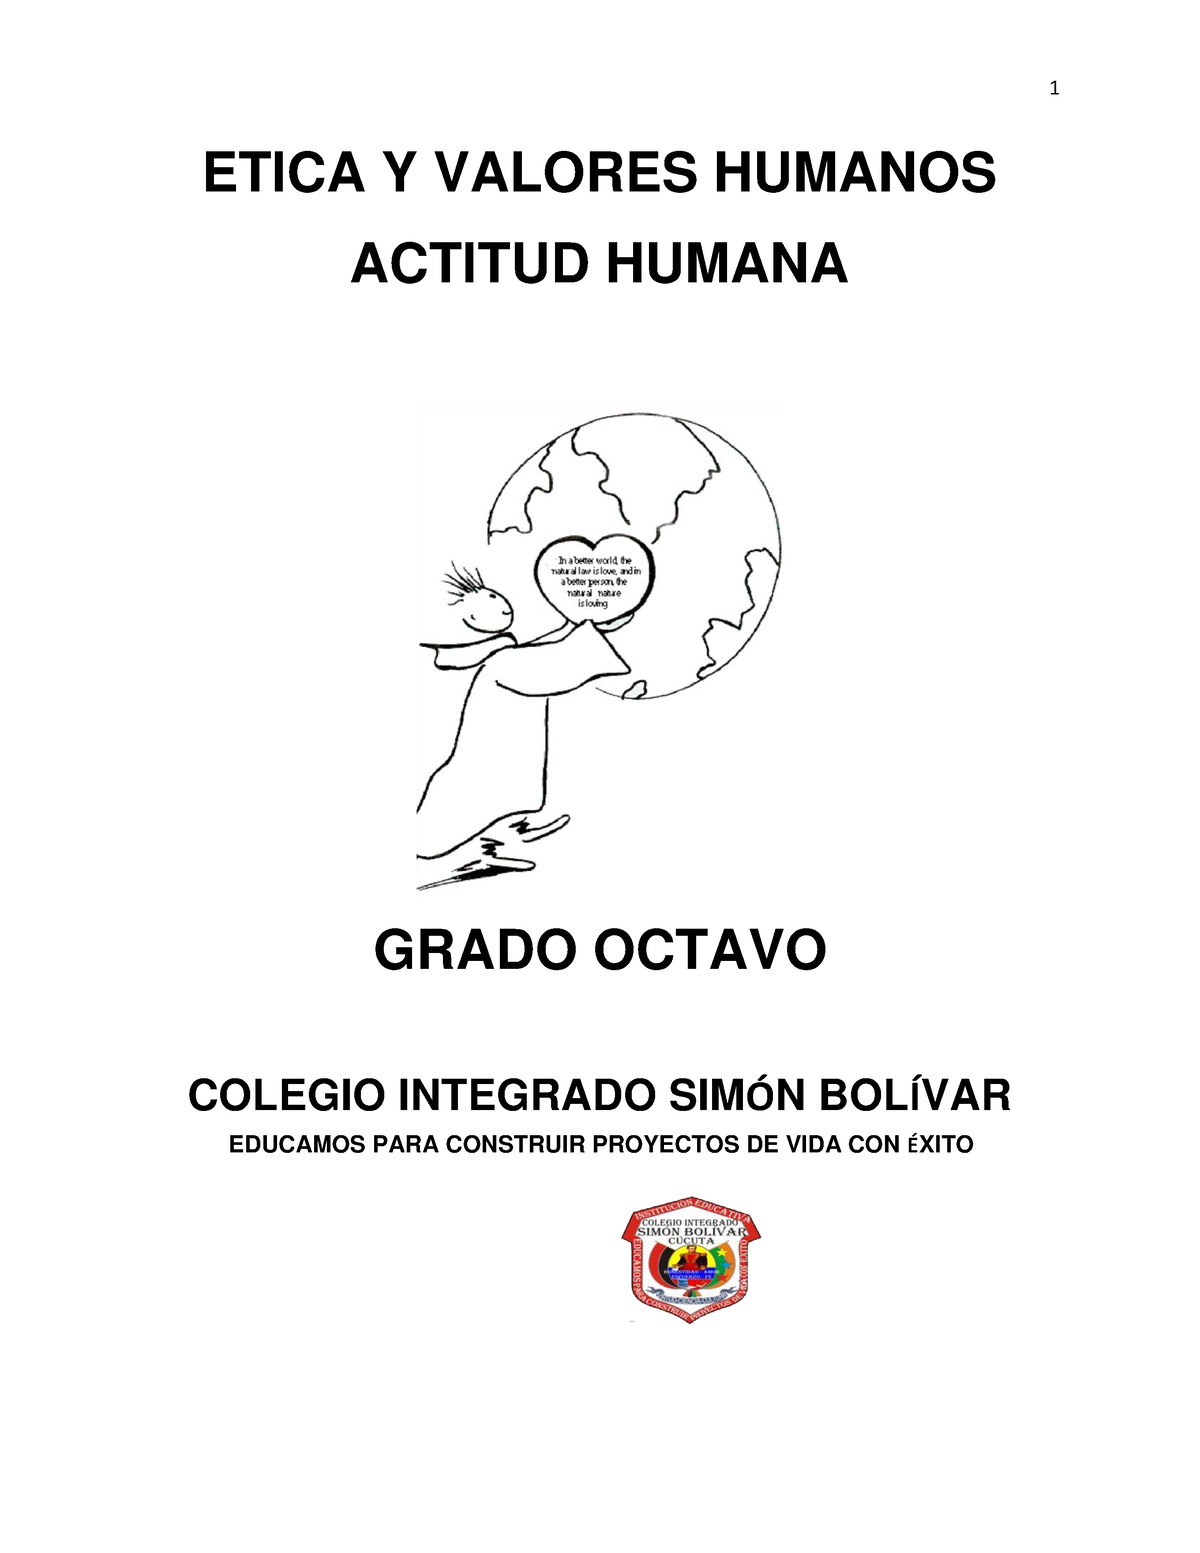 Octavo Actividad Etica Y Valores Humanos Actitud Humana Grado Octavo Colegio Integrado Sim”n 2380